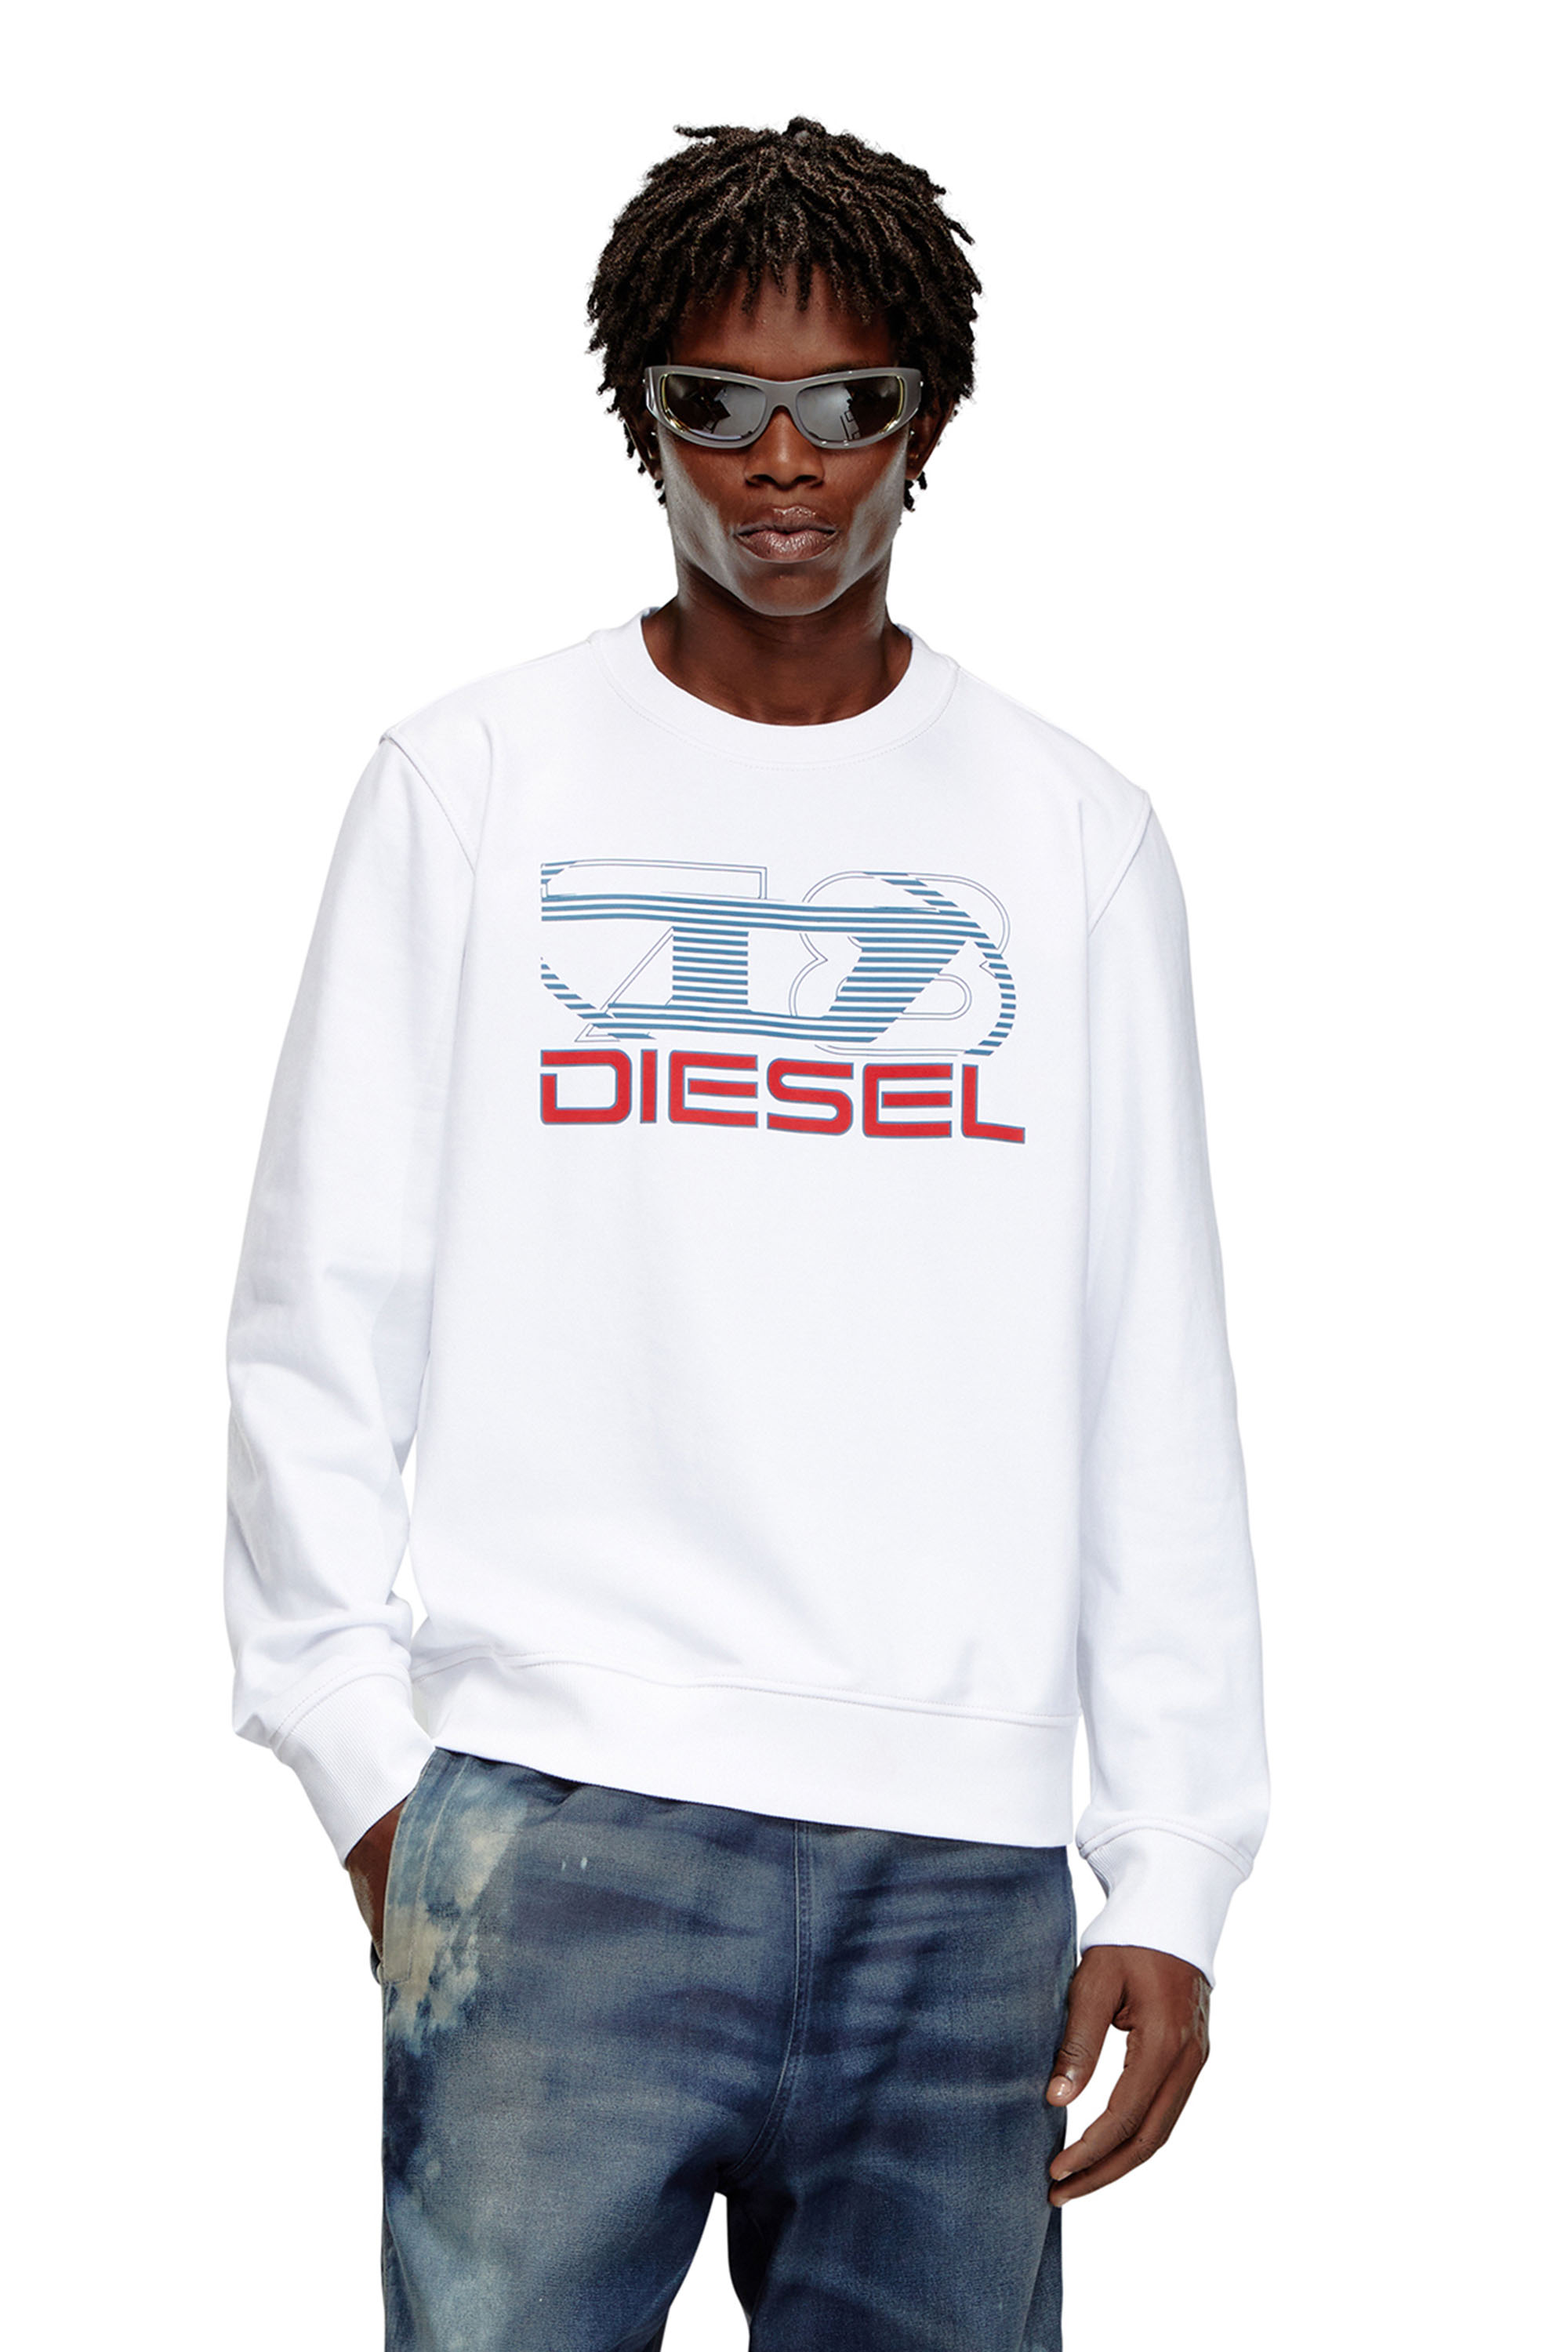 Diesel - Sweat-shirt avec logo imprimé - Pull Cotton - Homme - Blanc